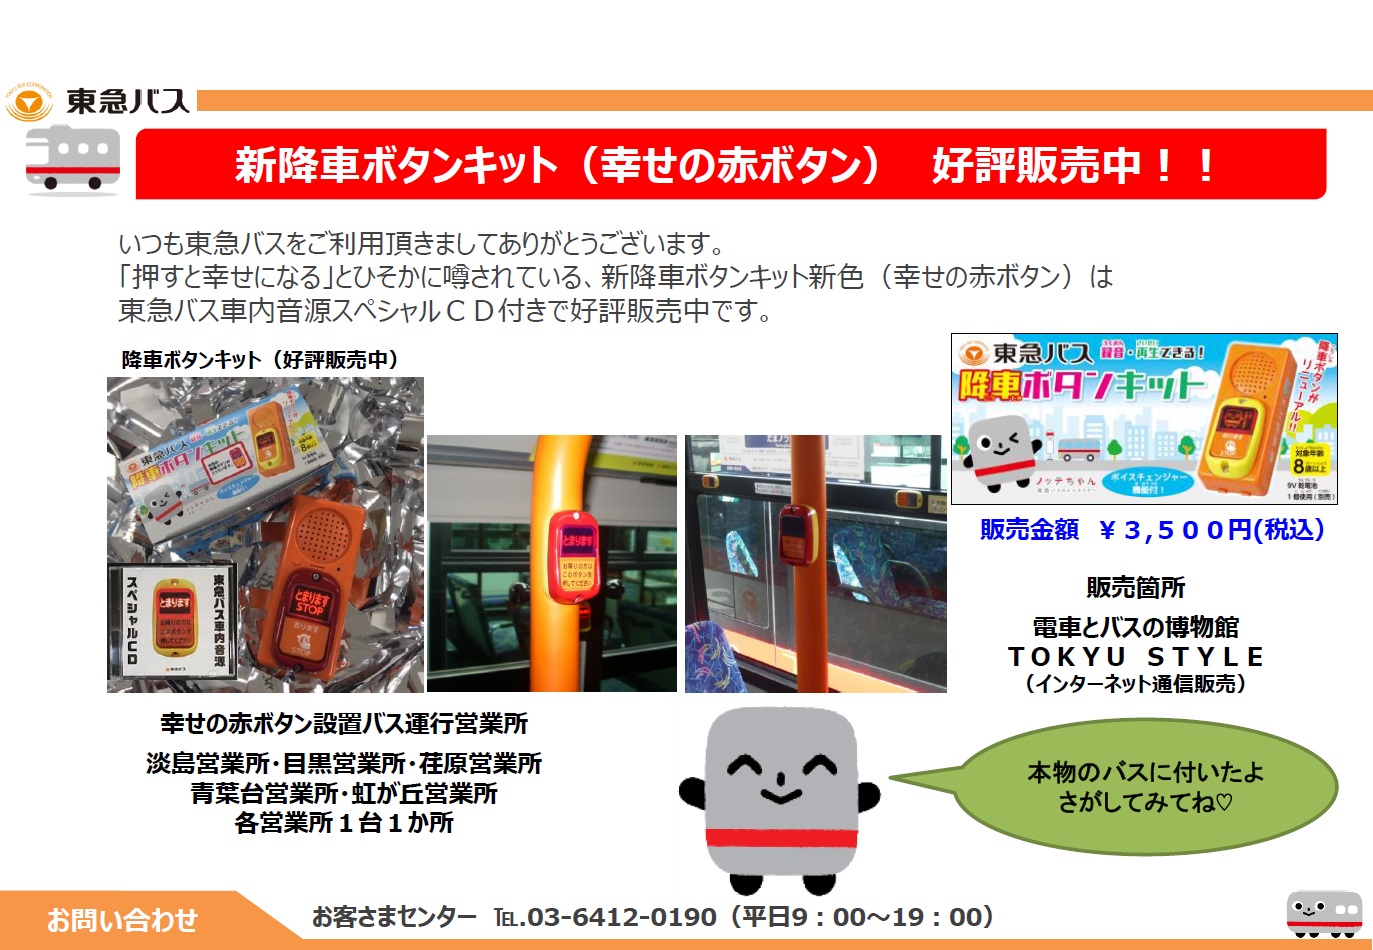 新降車ボタンキット 幸せの赤ボタン 好評販売中 お知らせ 東急バス